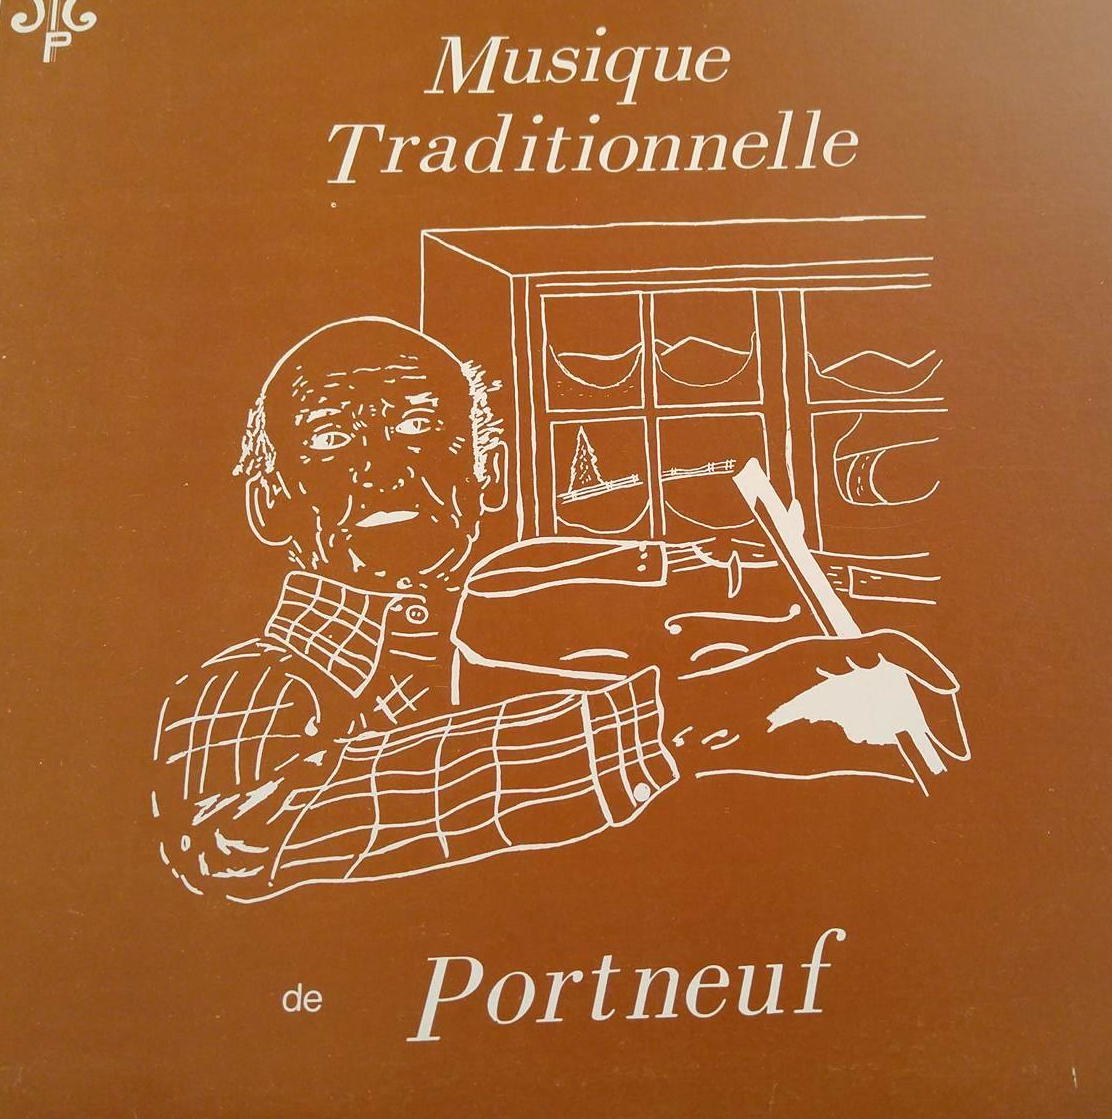 Musique Traditionnelle de Portneuf